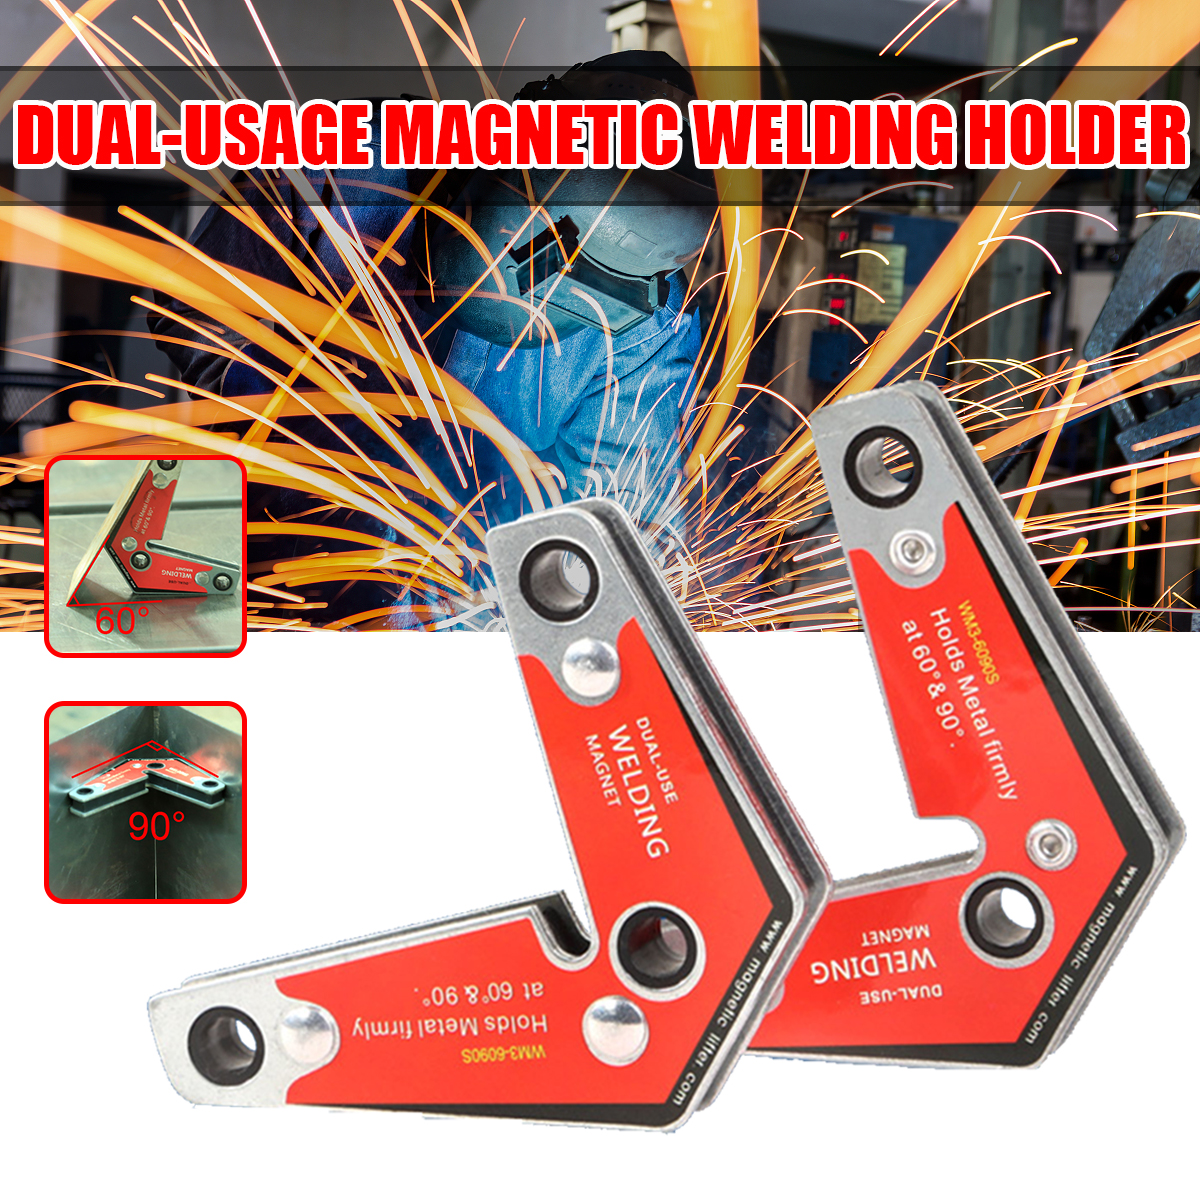 2Pcs-60deg-90deg-Dual-usage-Magnetic-Welding-Holder-Welding-Corner-Magnets-1698219-1